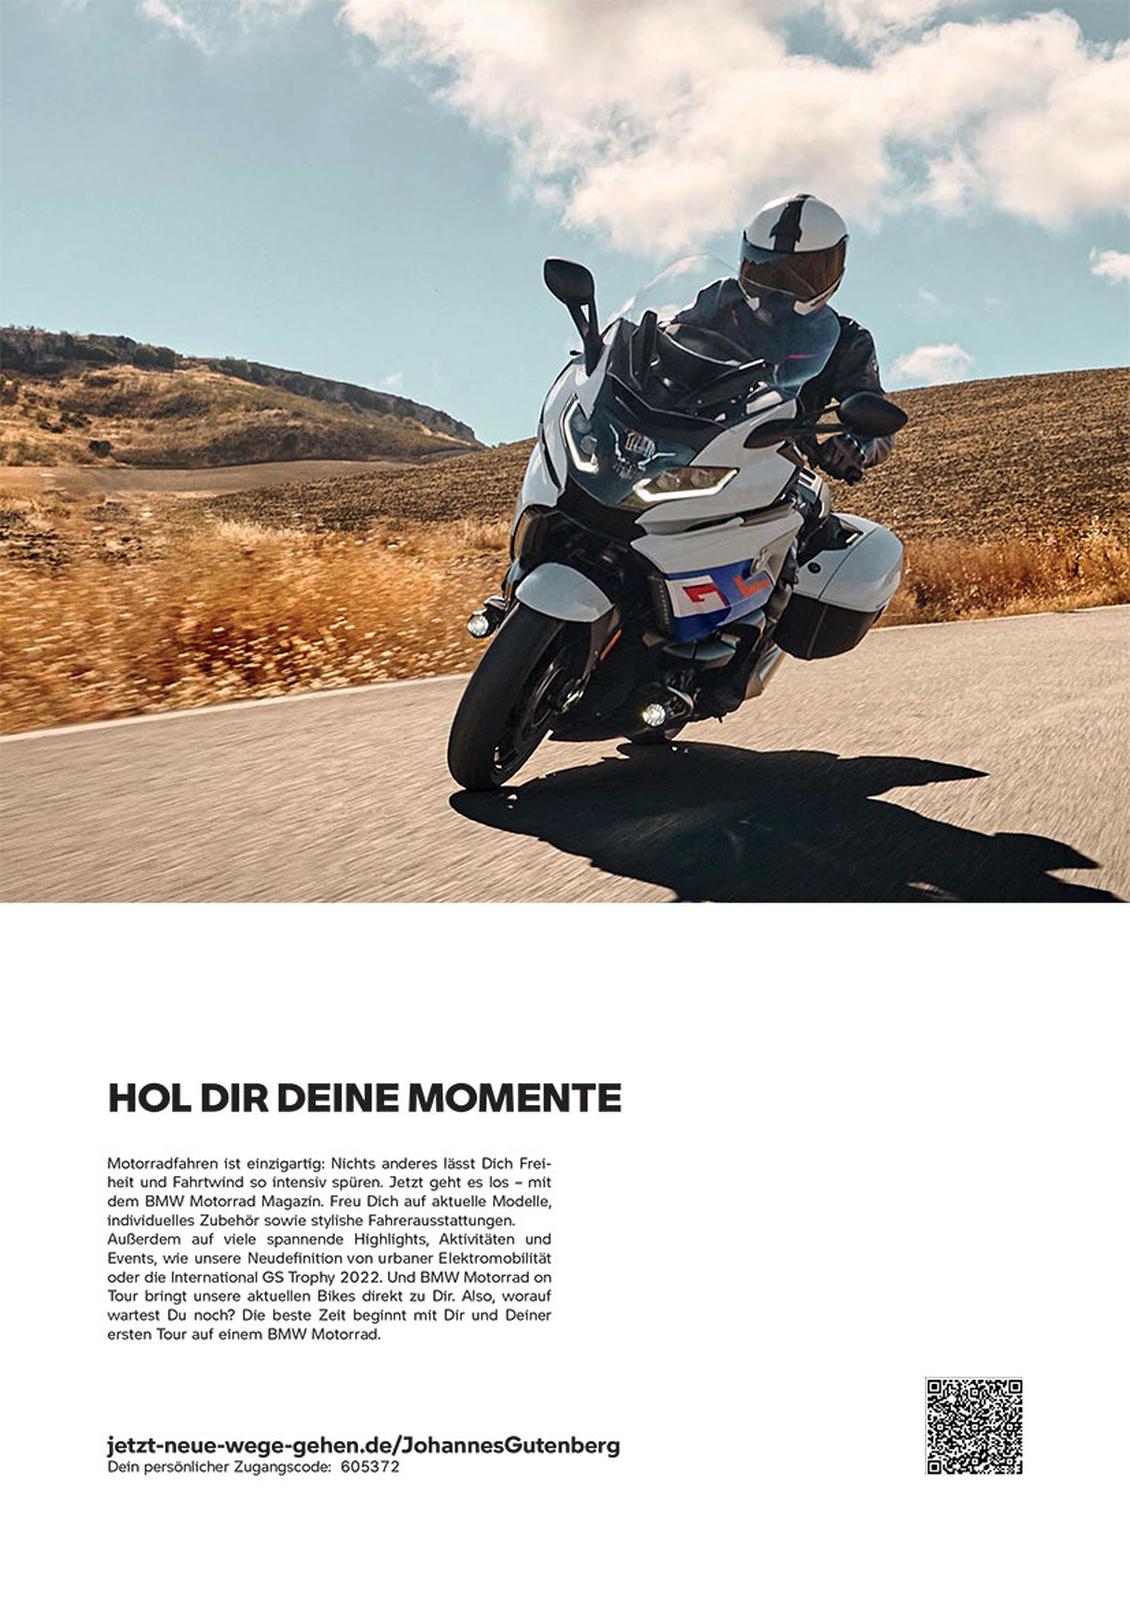 QR- und Zugangscode fhren auf personalisierte Websites mit weiteren Infos und Services fr die Motorradfans. (Bild: BMW_MOTORRAD)